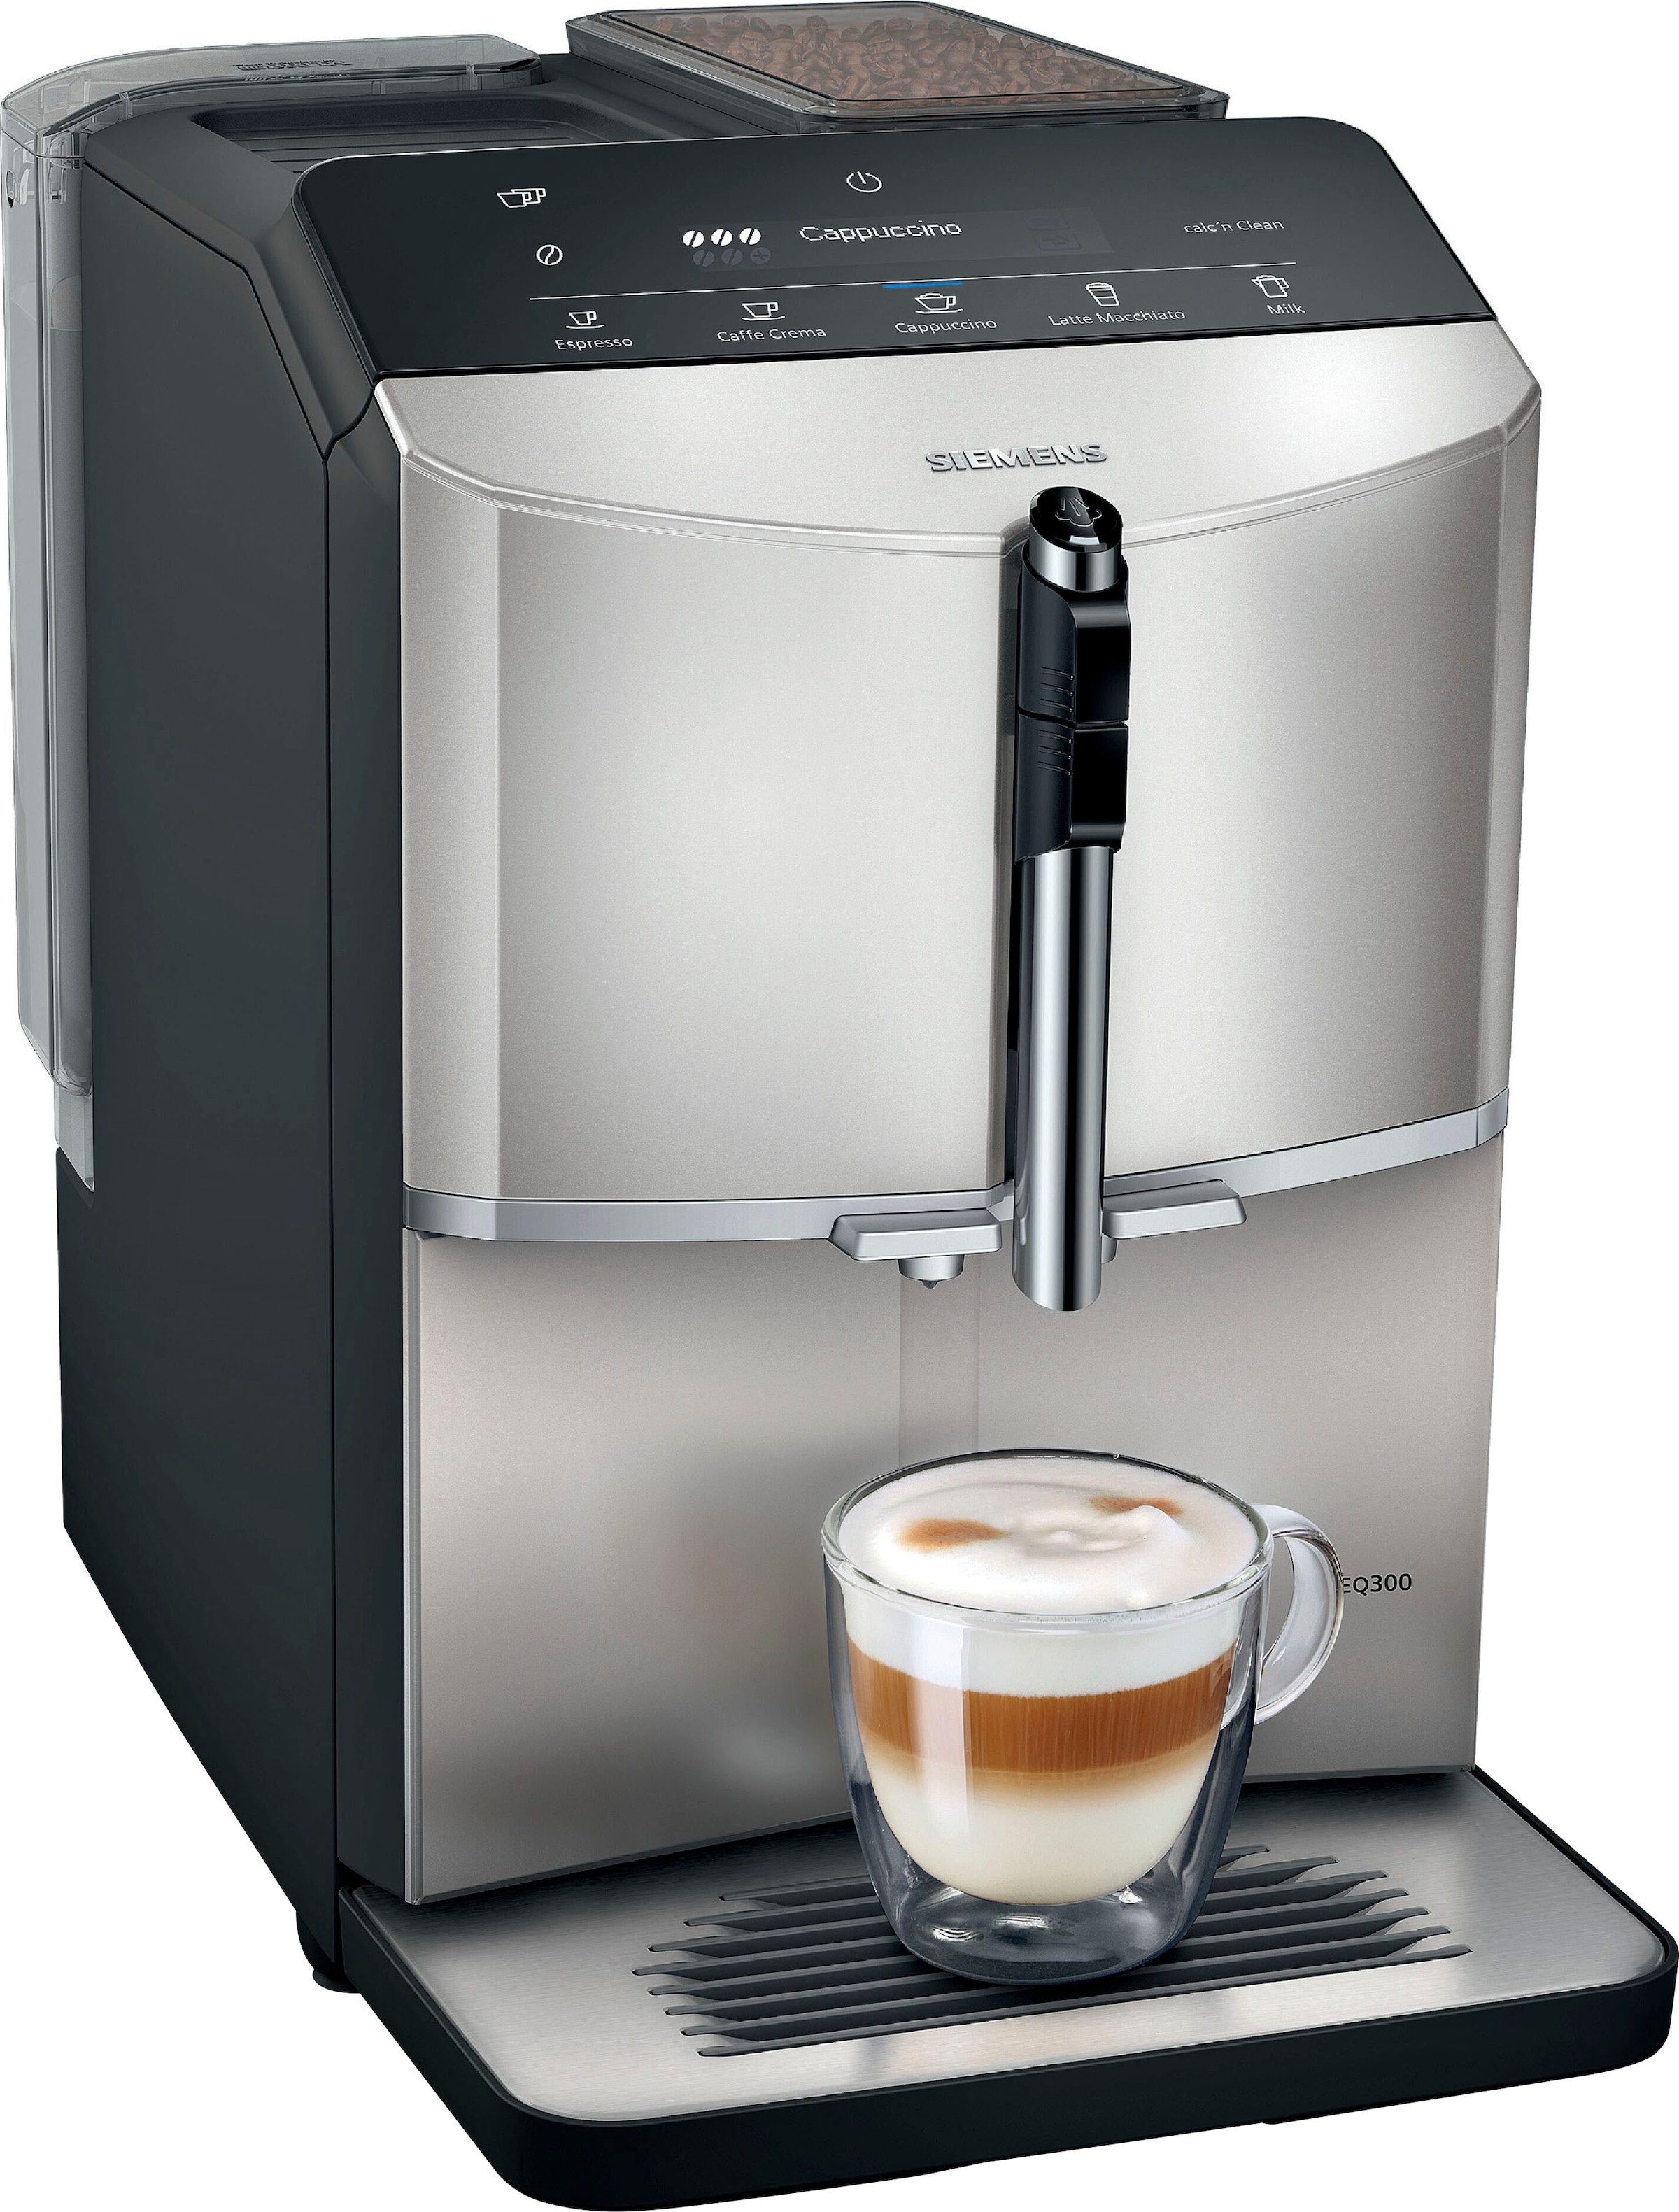 SIEMENS Kaffeevollautomat "EQ300 TF303E07, viele Kaffeespezialitäten, OneTouch-Funktion", benutzerfreundliches Display, 